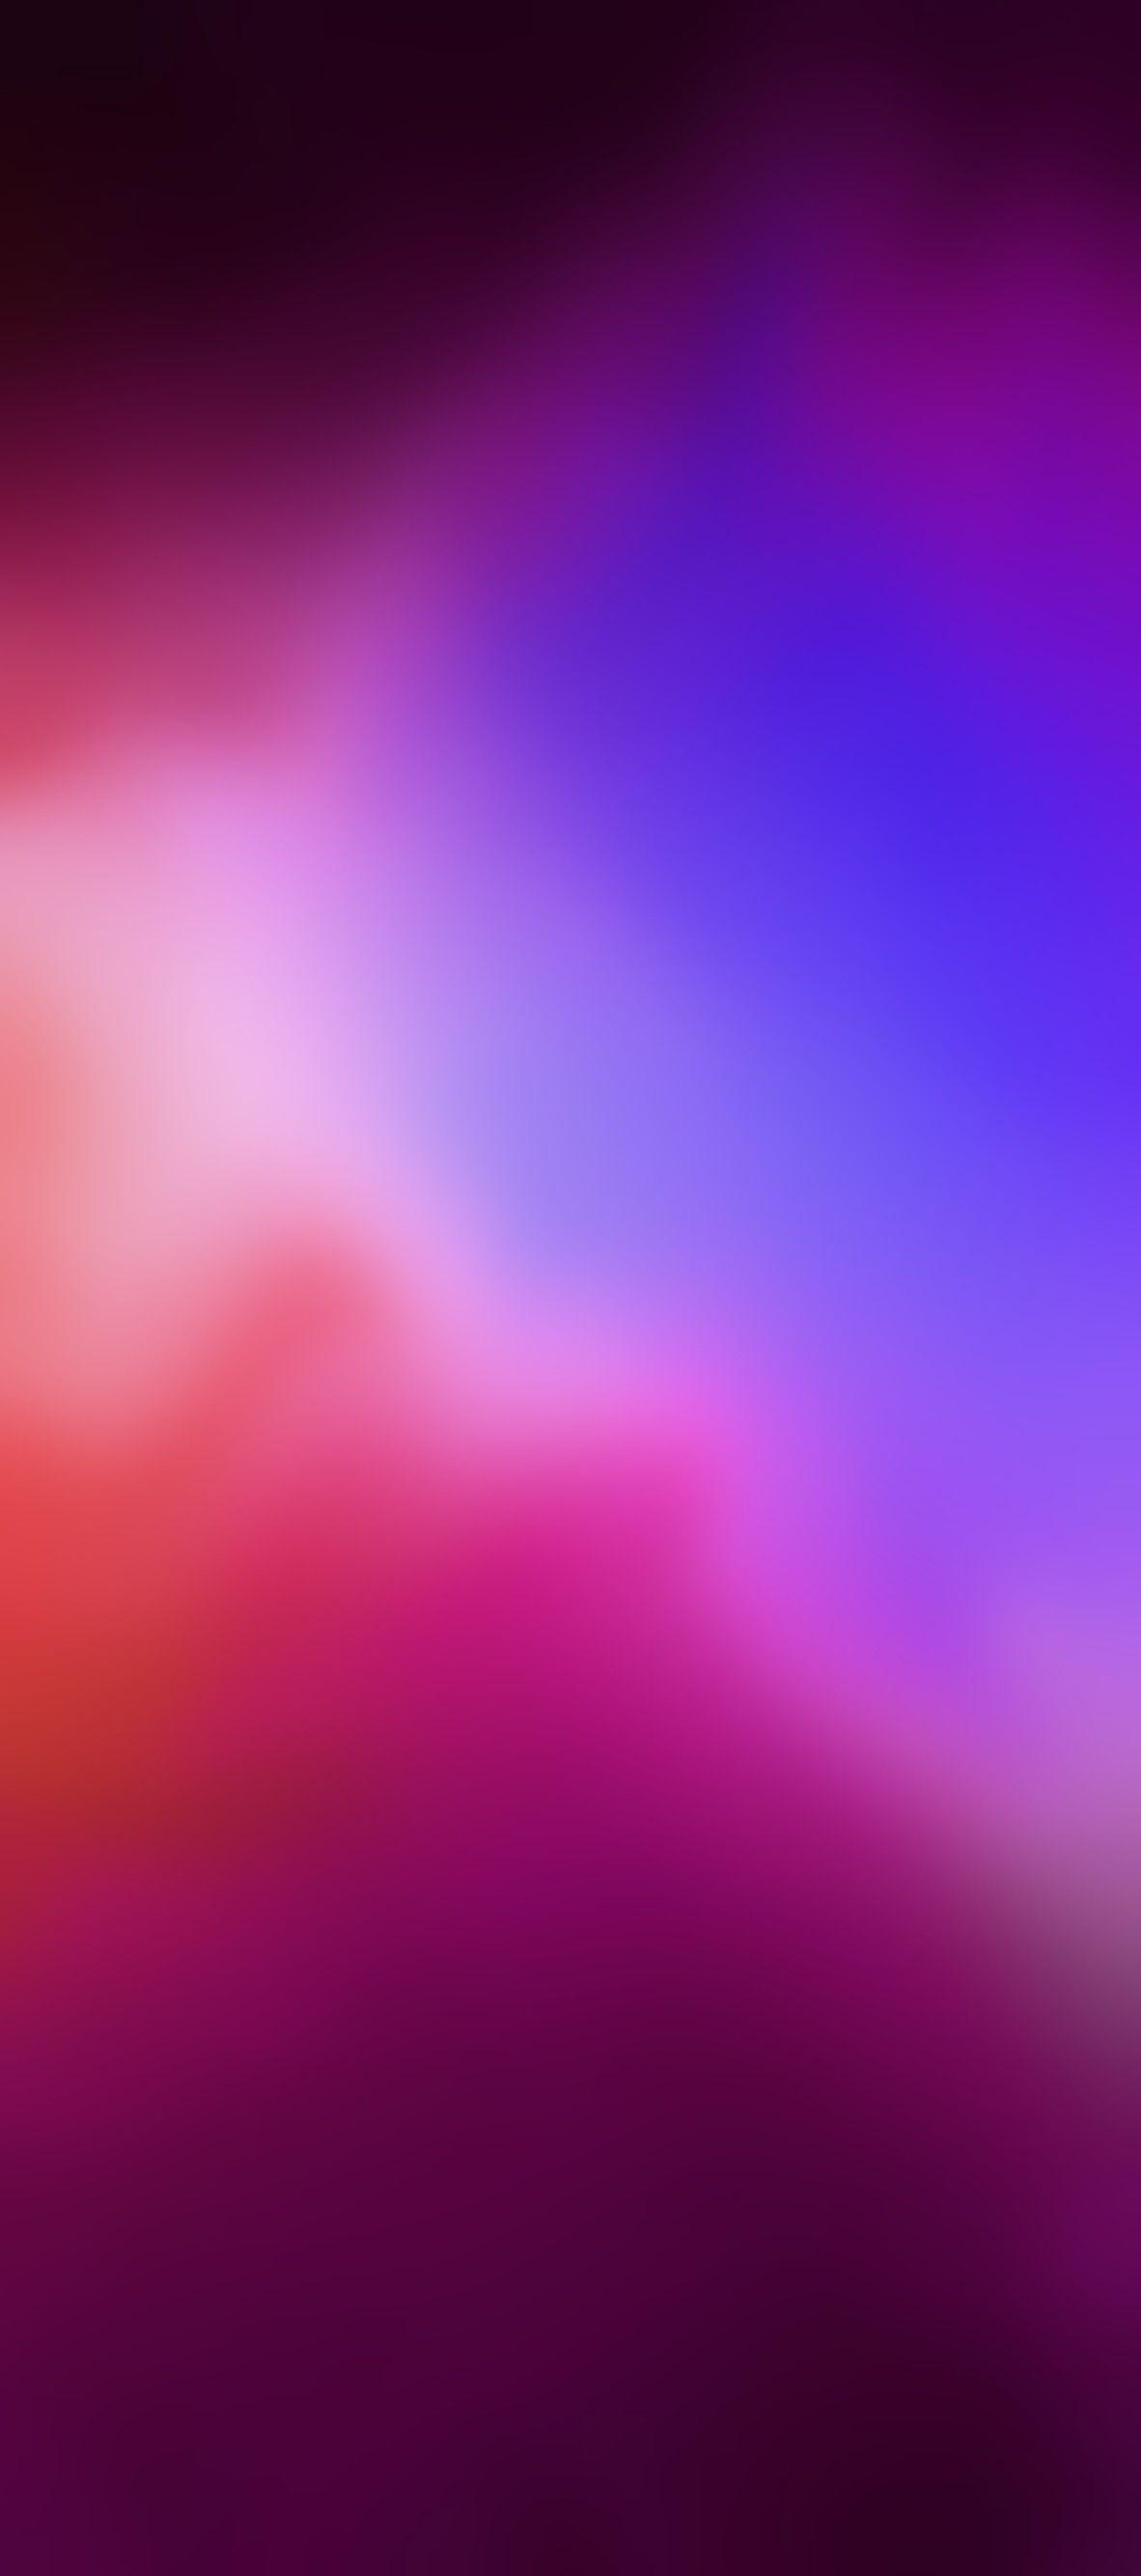 1182x2668 iOS 11, iPhone X, màu tím, xanh lam, sạch sẽ, đơn giản, trừu tượng, táo